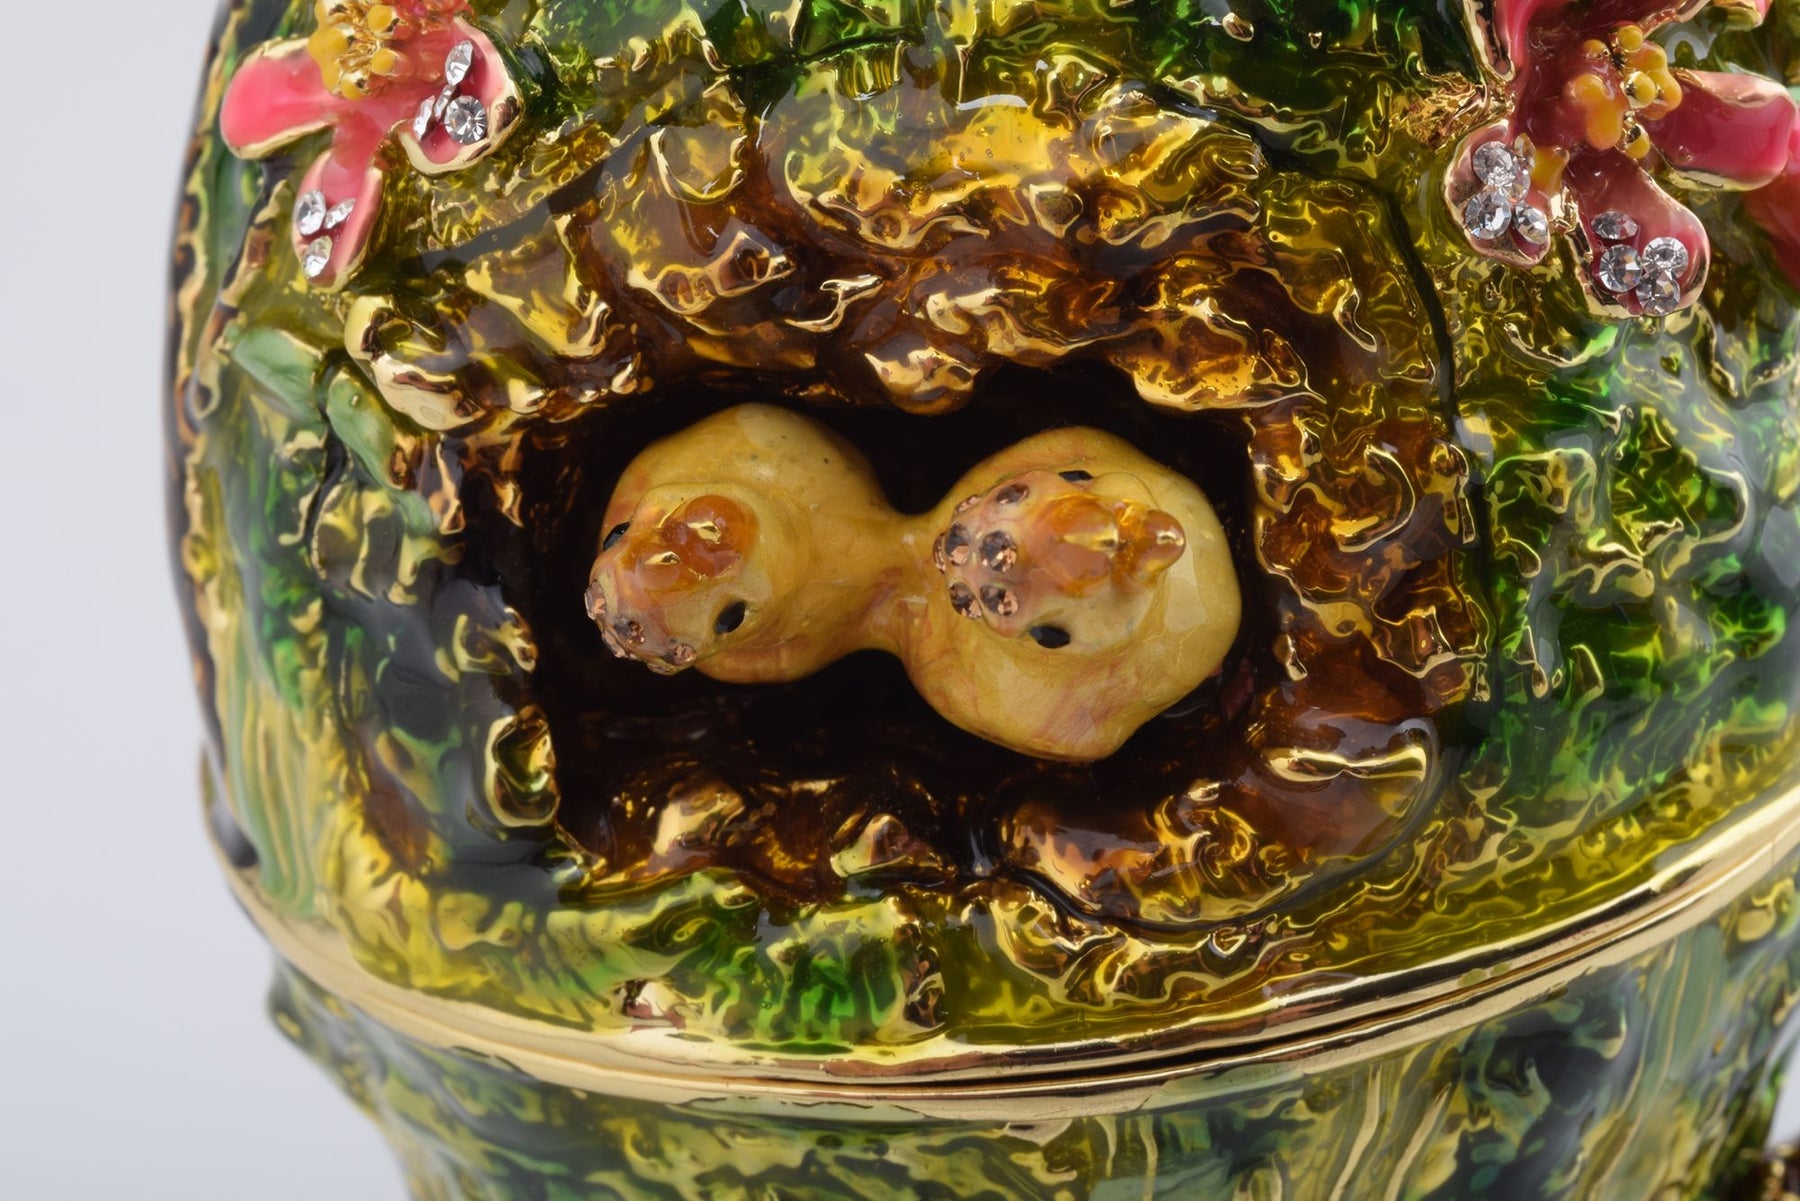 Oeuf de style Fabergé pour nid d'oiseau avec une perle sur le dessus